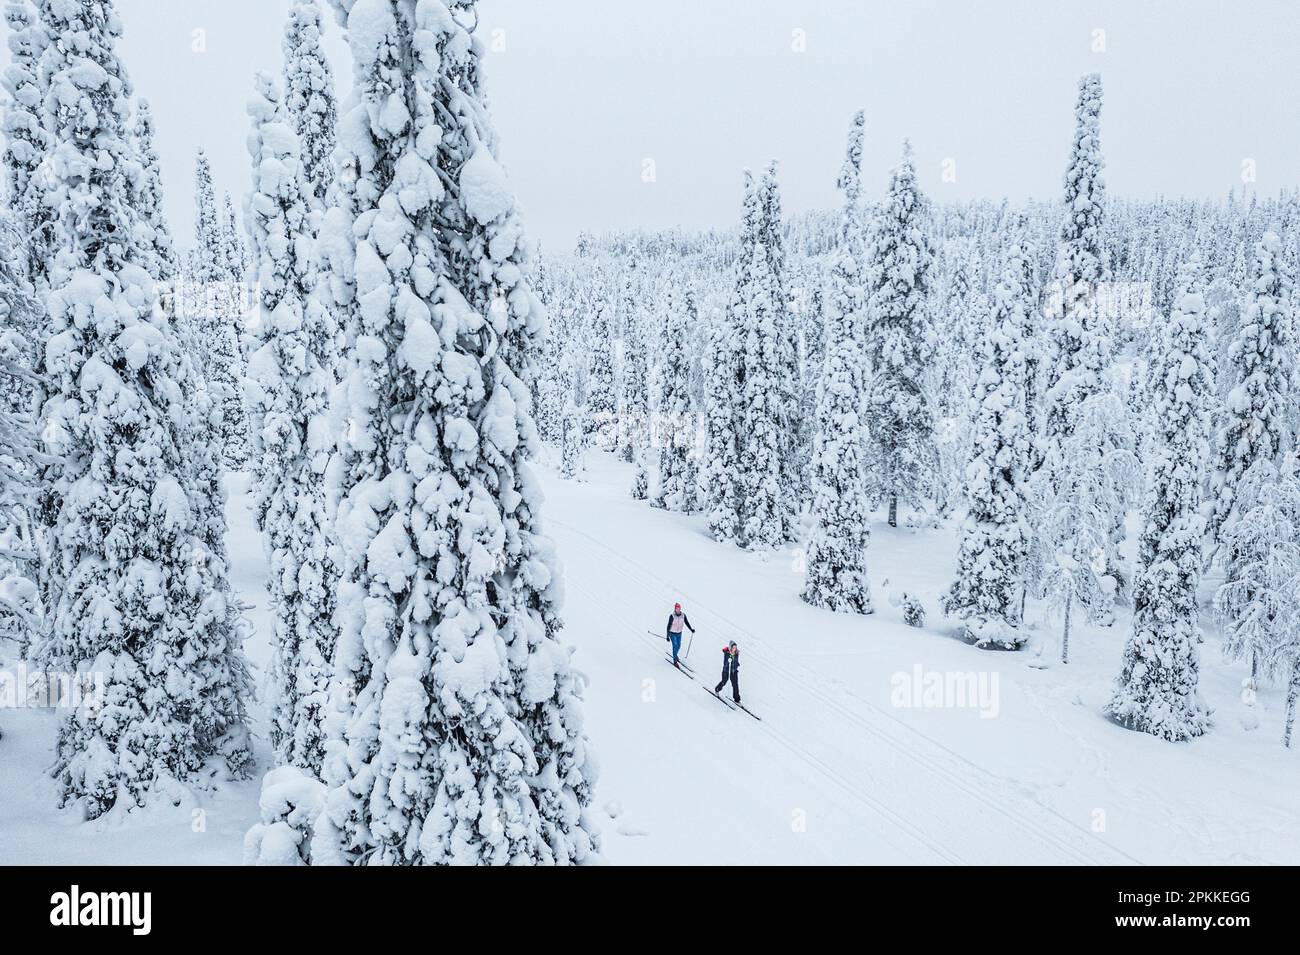 Zwei Personen durchqueren Langlauf im verschneiten Wald, Luftaufnahme, Lappland, Finnland, Europa Stockfoto